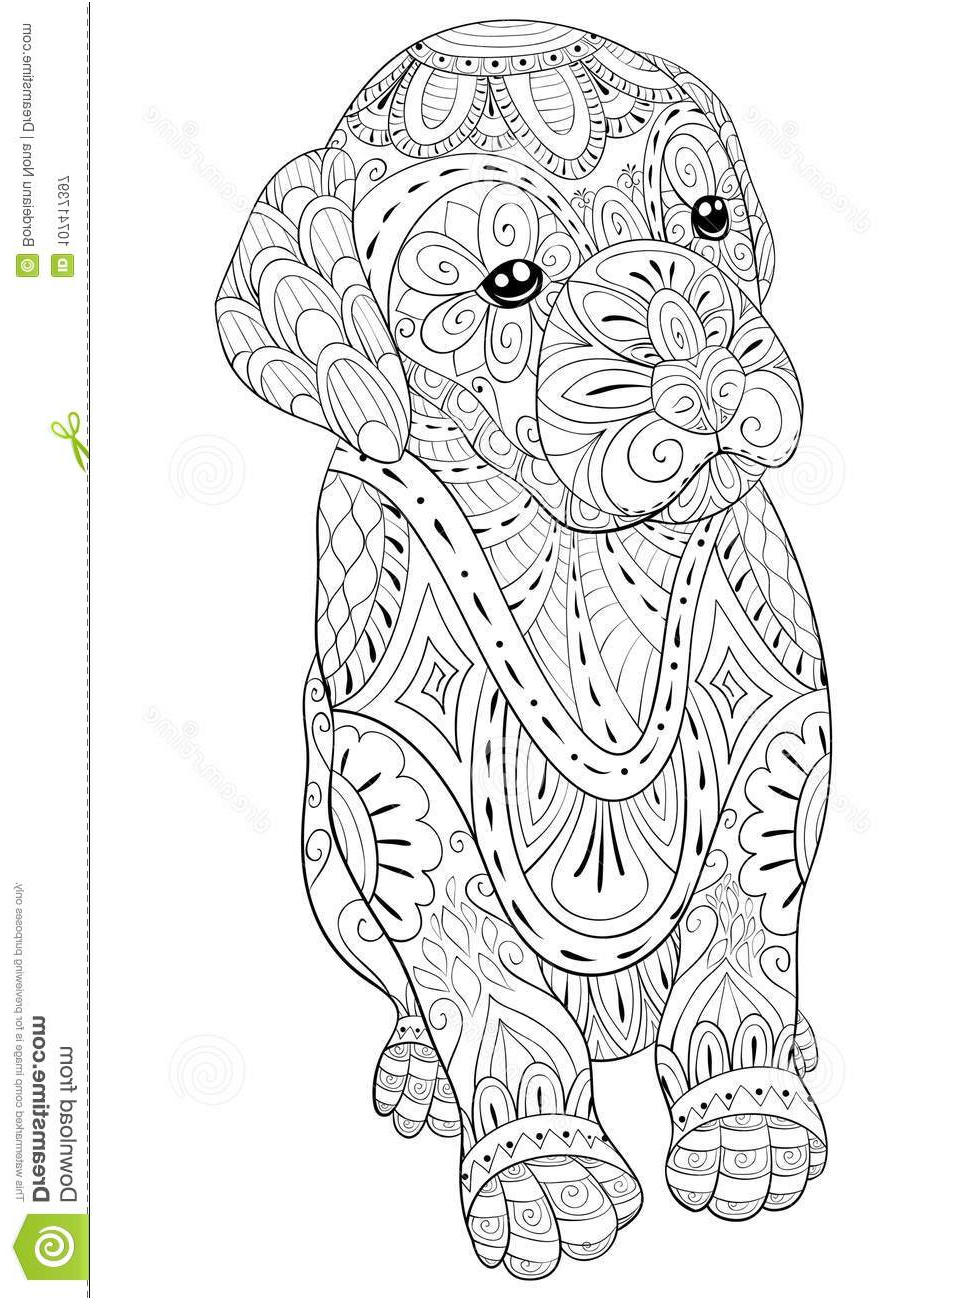 livre de coloriage adulte paginent un petit chien mignon pour la détente illustration style d art zen image